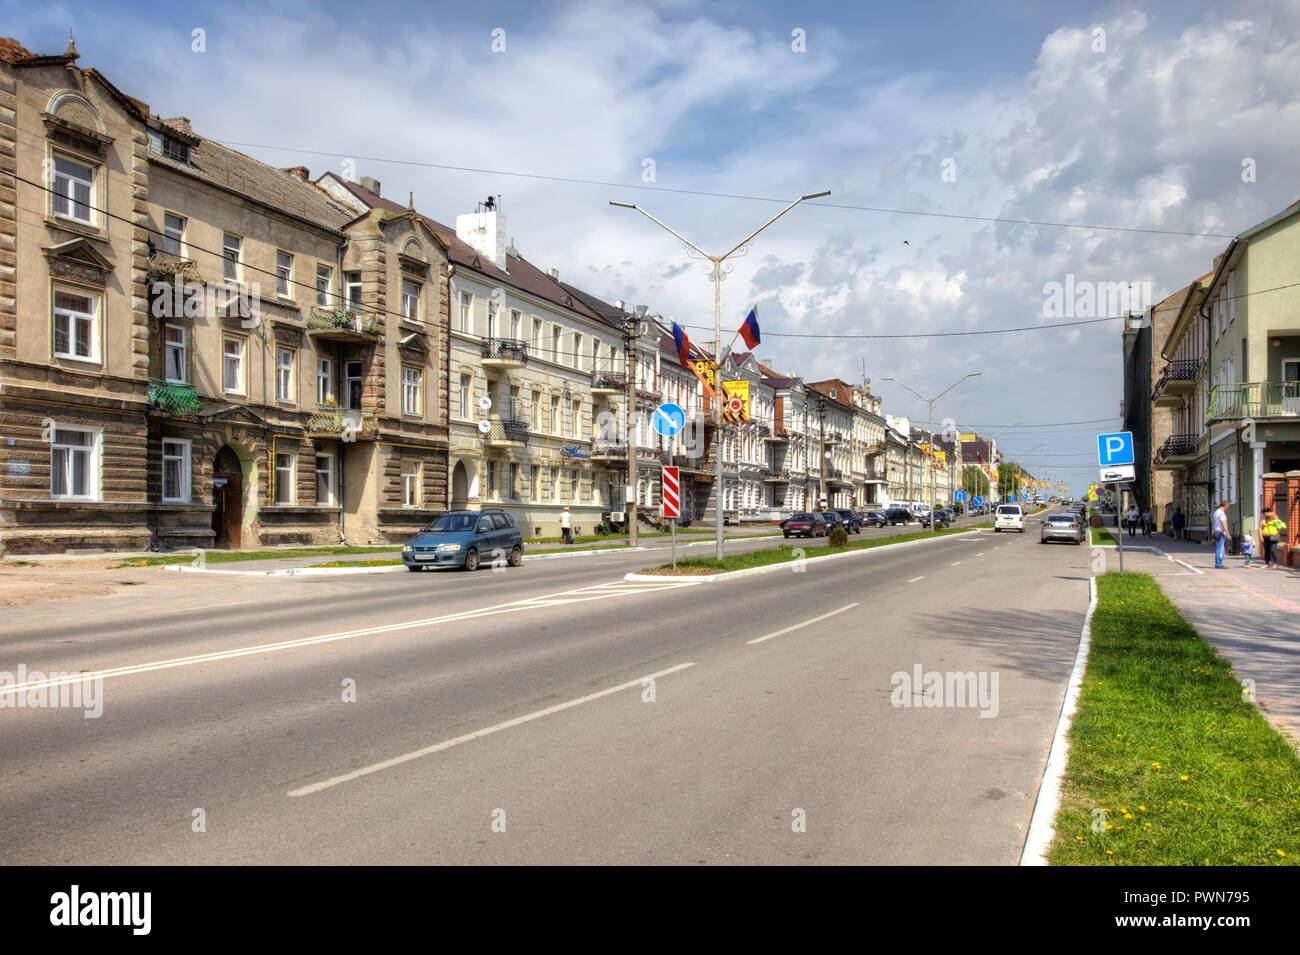 GUSEV, RUSSIA - May 03.2018: Kaliningrad region. Moskovskaya street in the city center Stock Photo